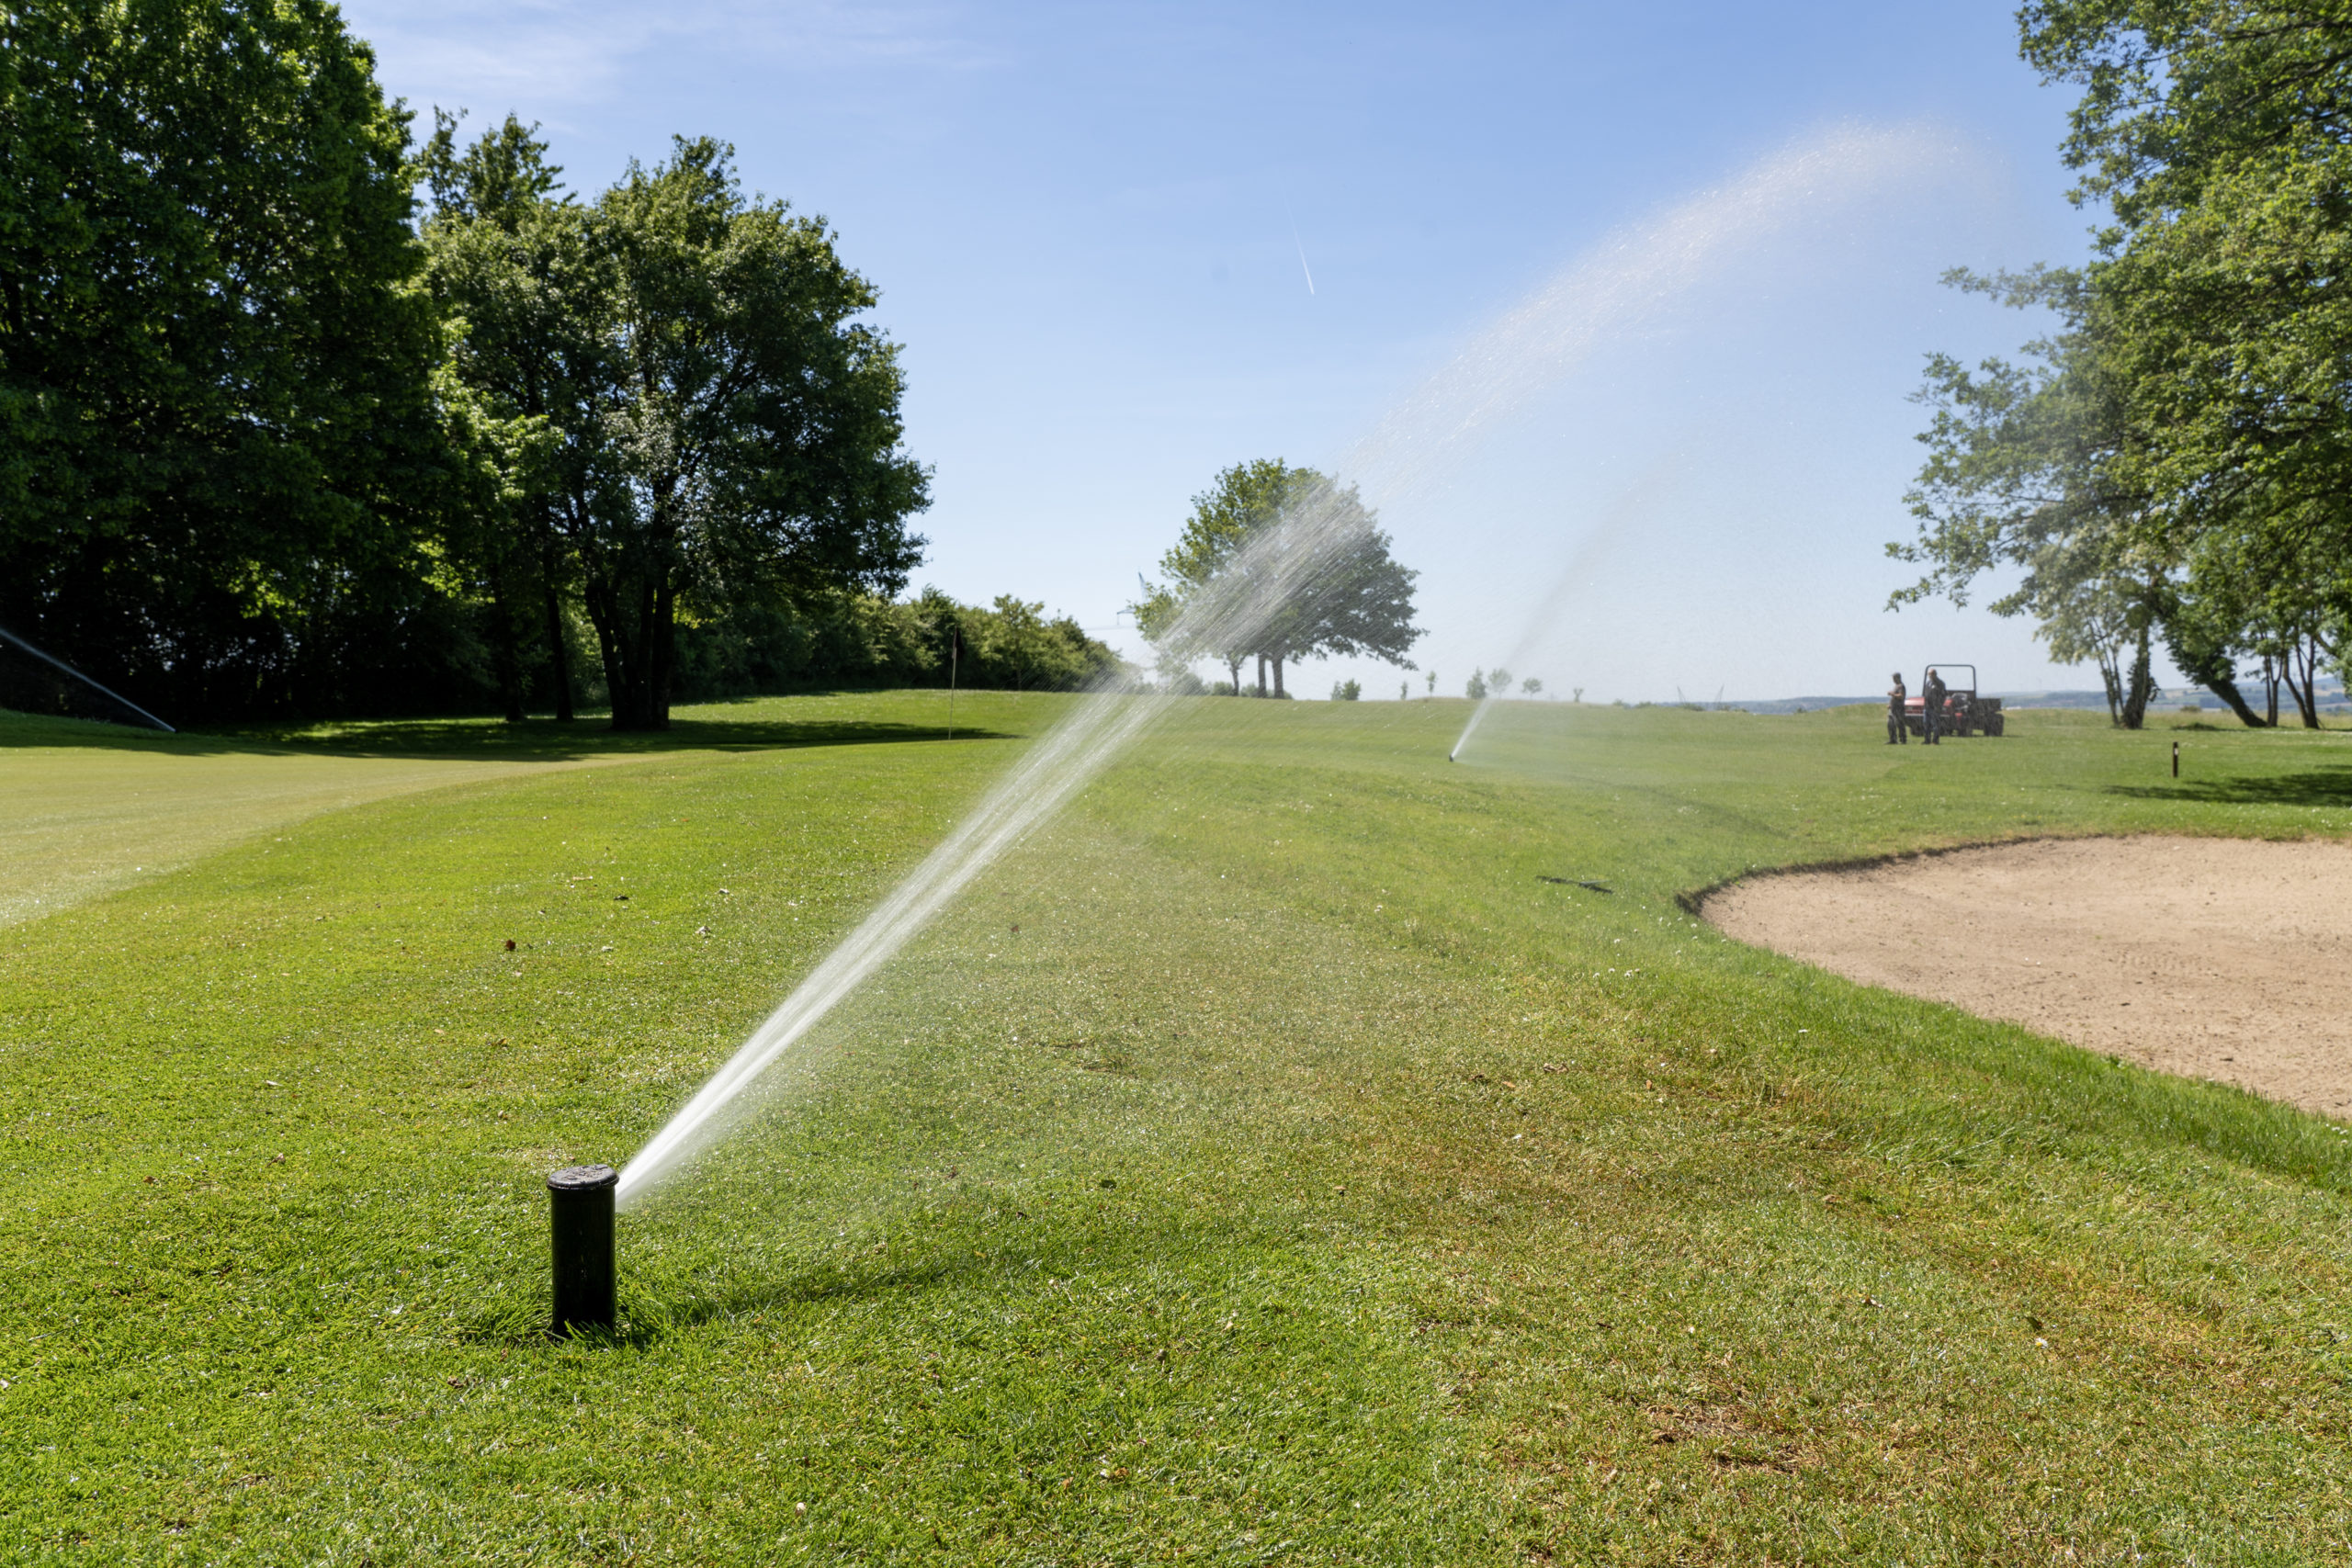 Buse d'arrosage en train de diffuser de l'eau sur un gazon de golf